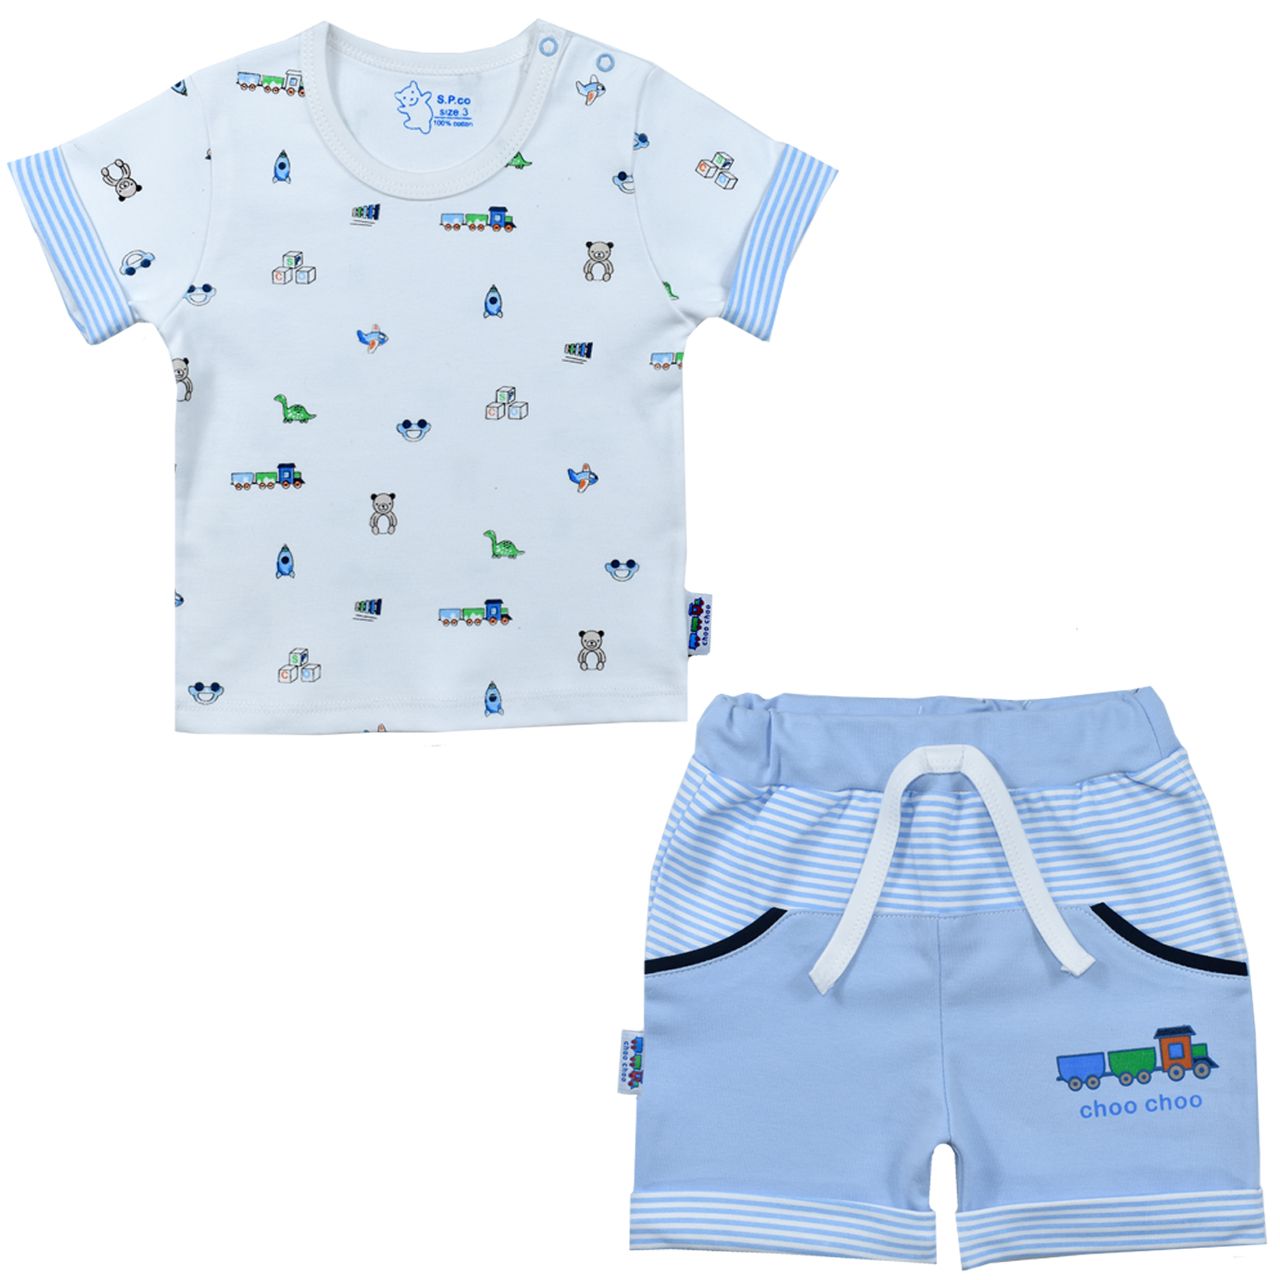 ست تی شرت و شلوارک نوزادی اسپیکو مدل ترن کد 2